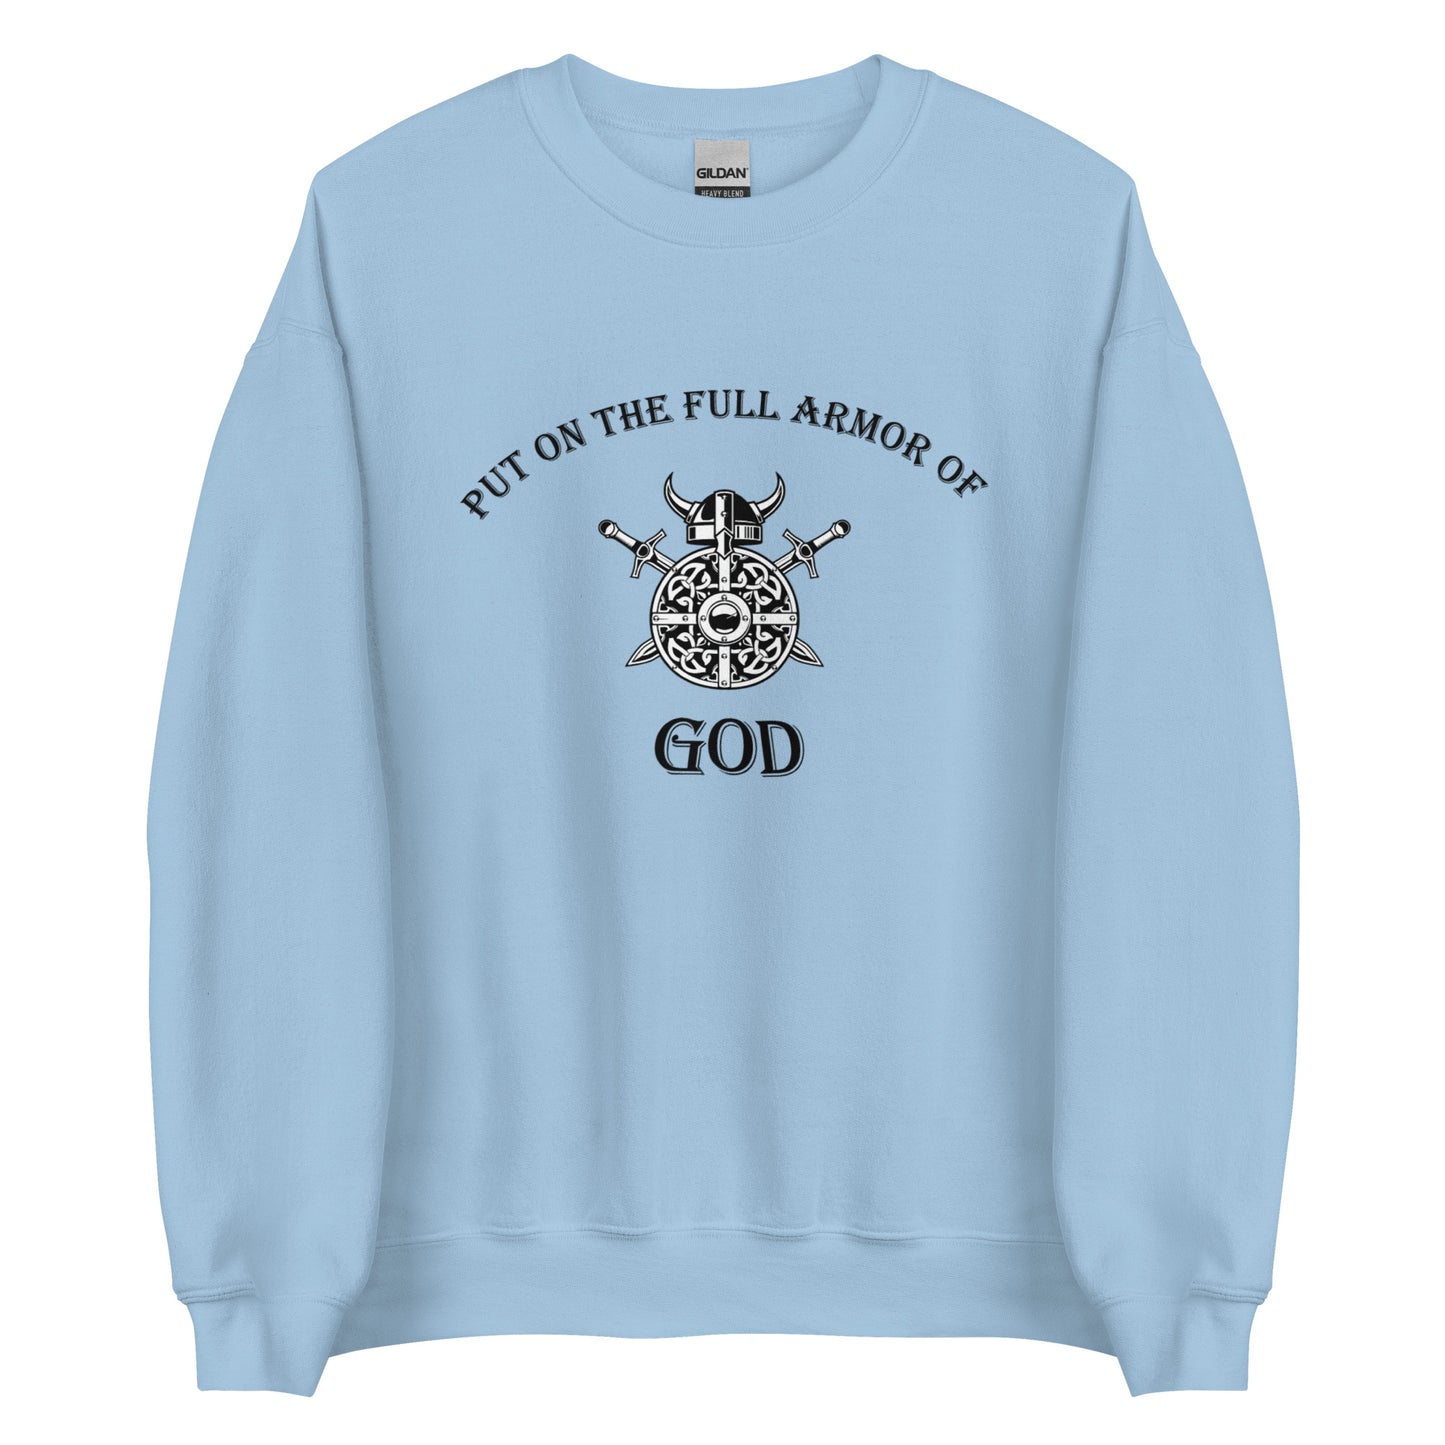 Put on the Full Armor of God Unisex Sweatshirt